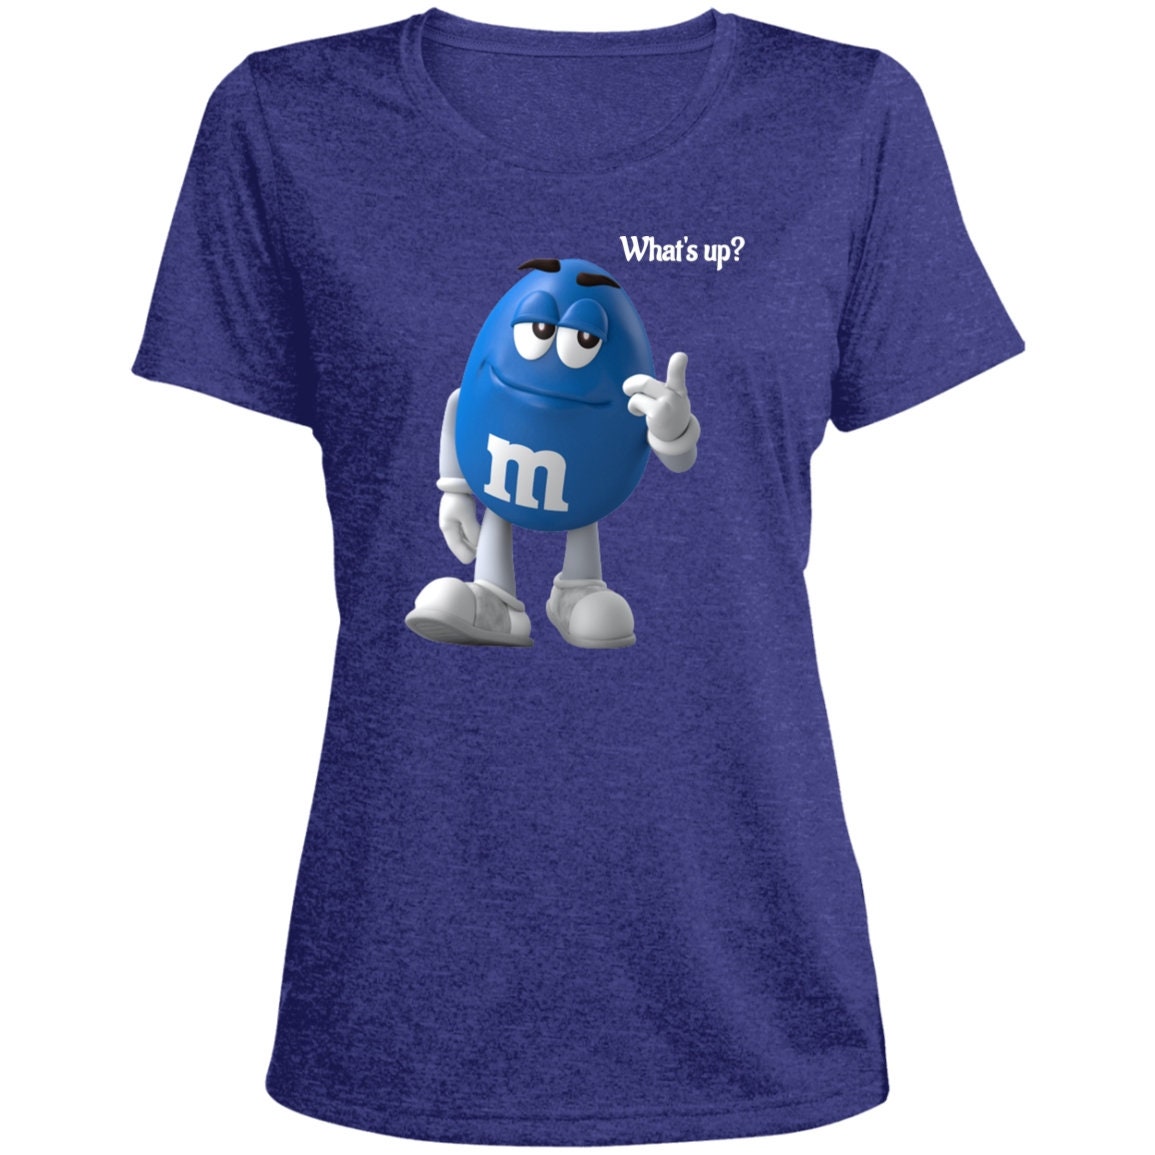 Buy M&m Shirtmm Tshirt Blue Mm Shirt M and M Tshirt What's Online